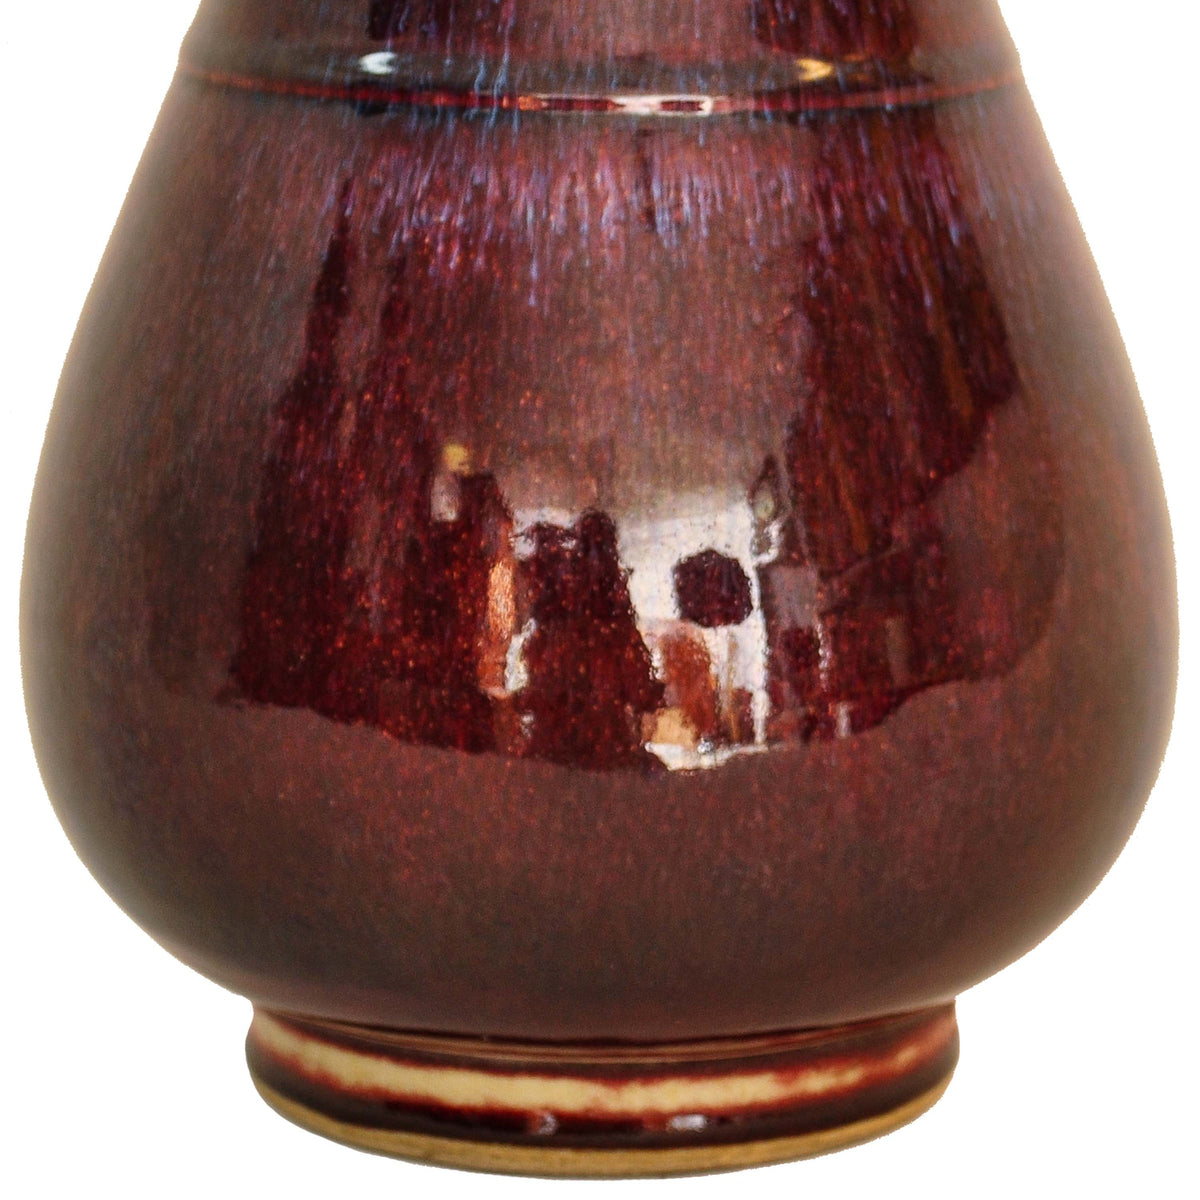 Antique Chinese Qing Dynasty Flambe-Glazed Hu Porcelain Vase, Circa 1800